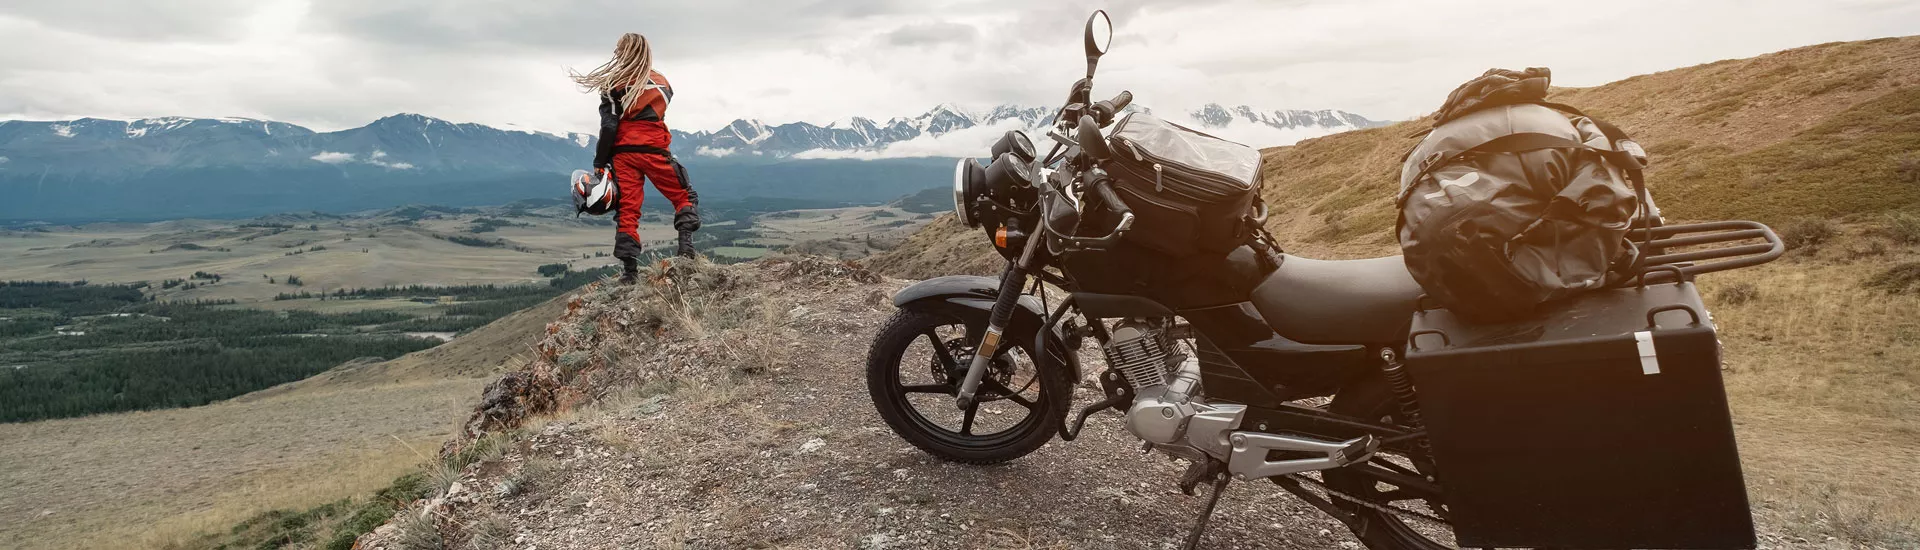 Mit dem Motorrad durch das Altai Gebirge in Russland